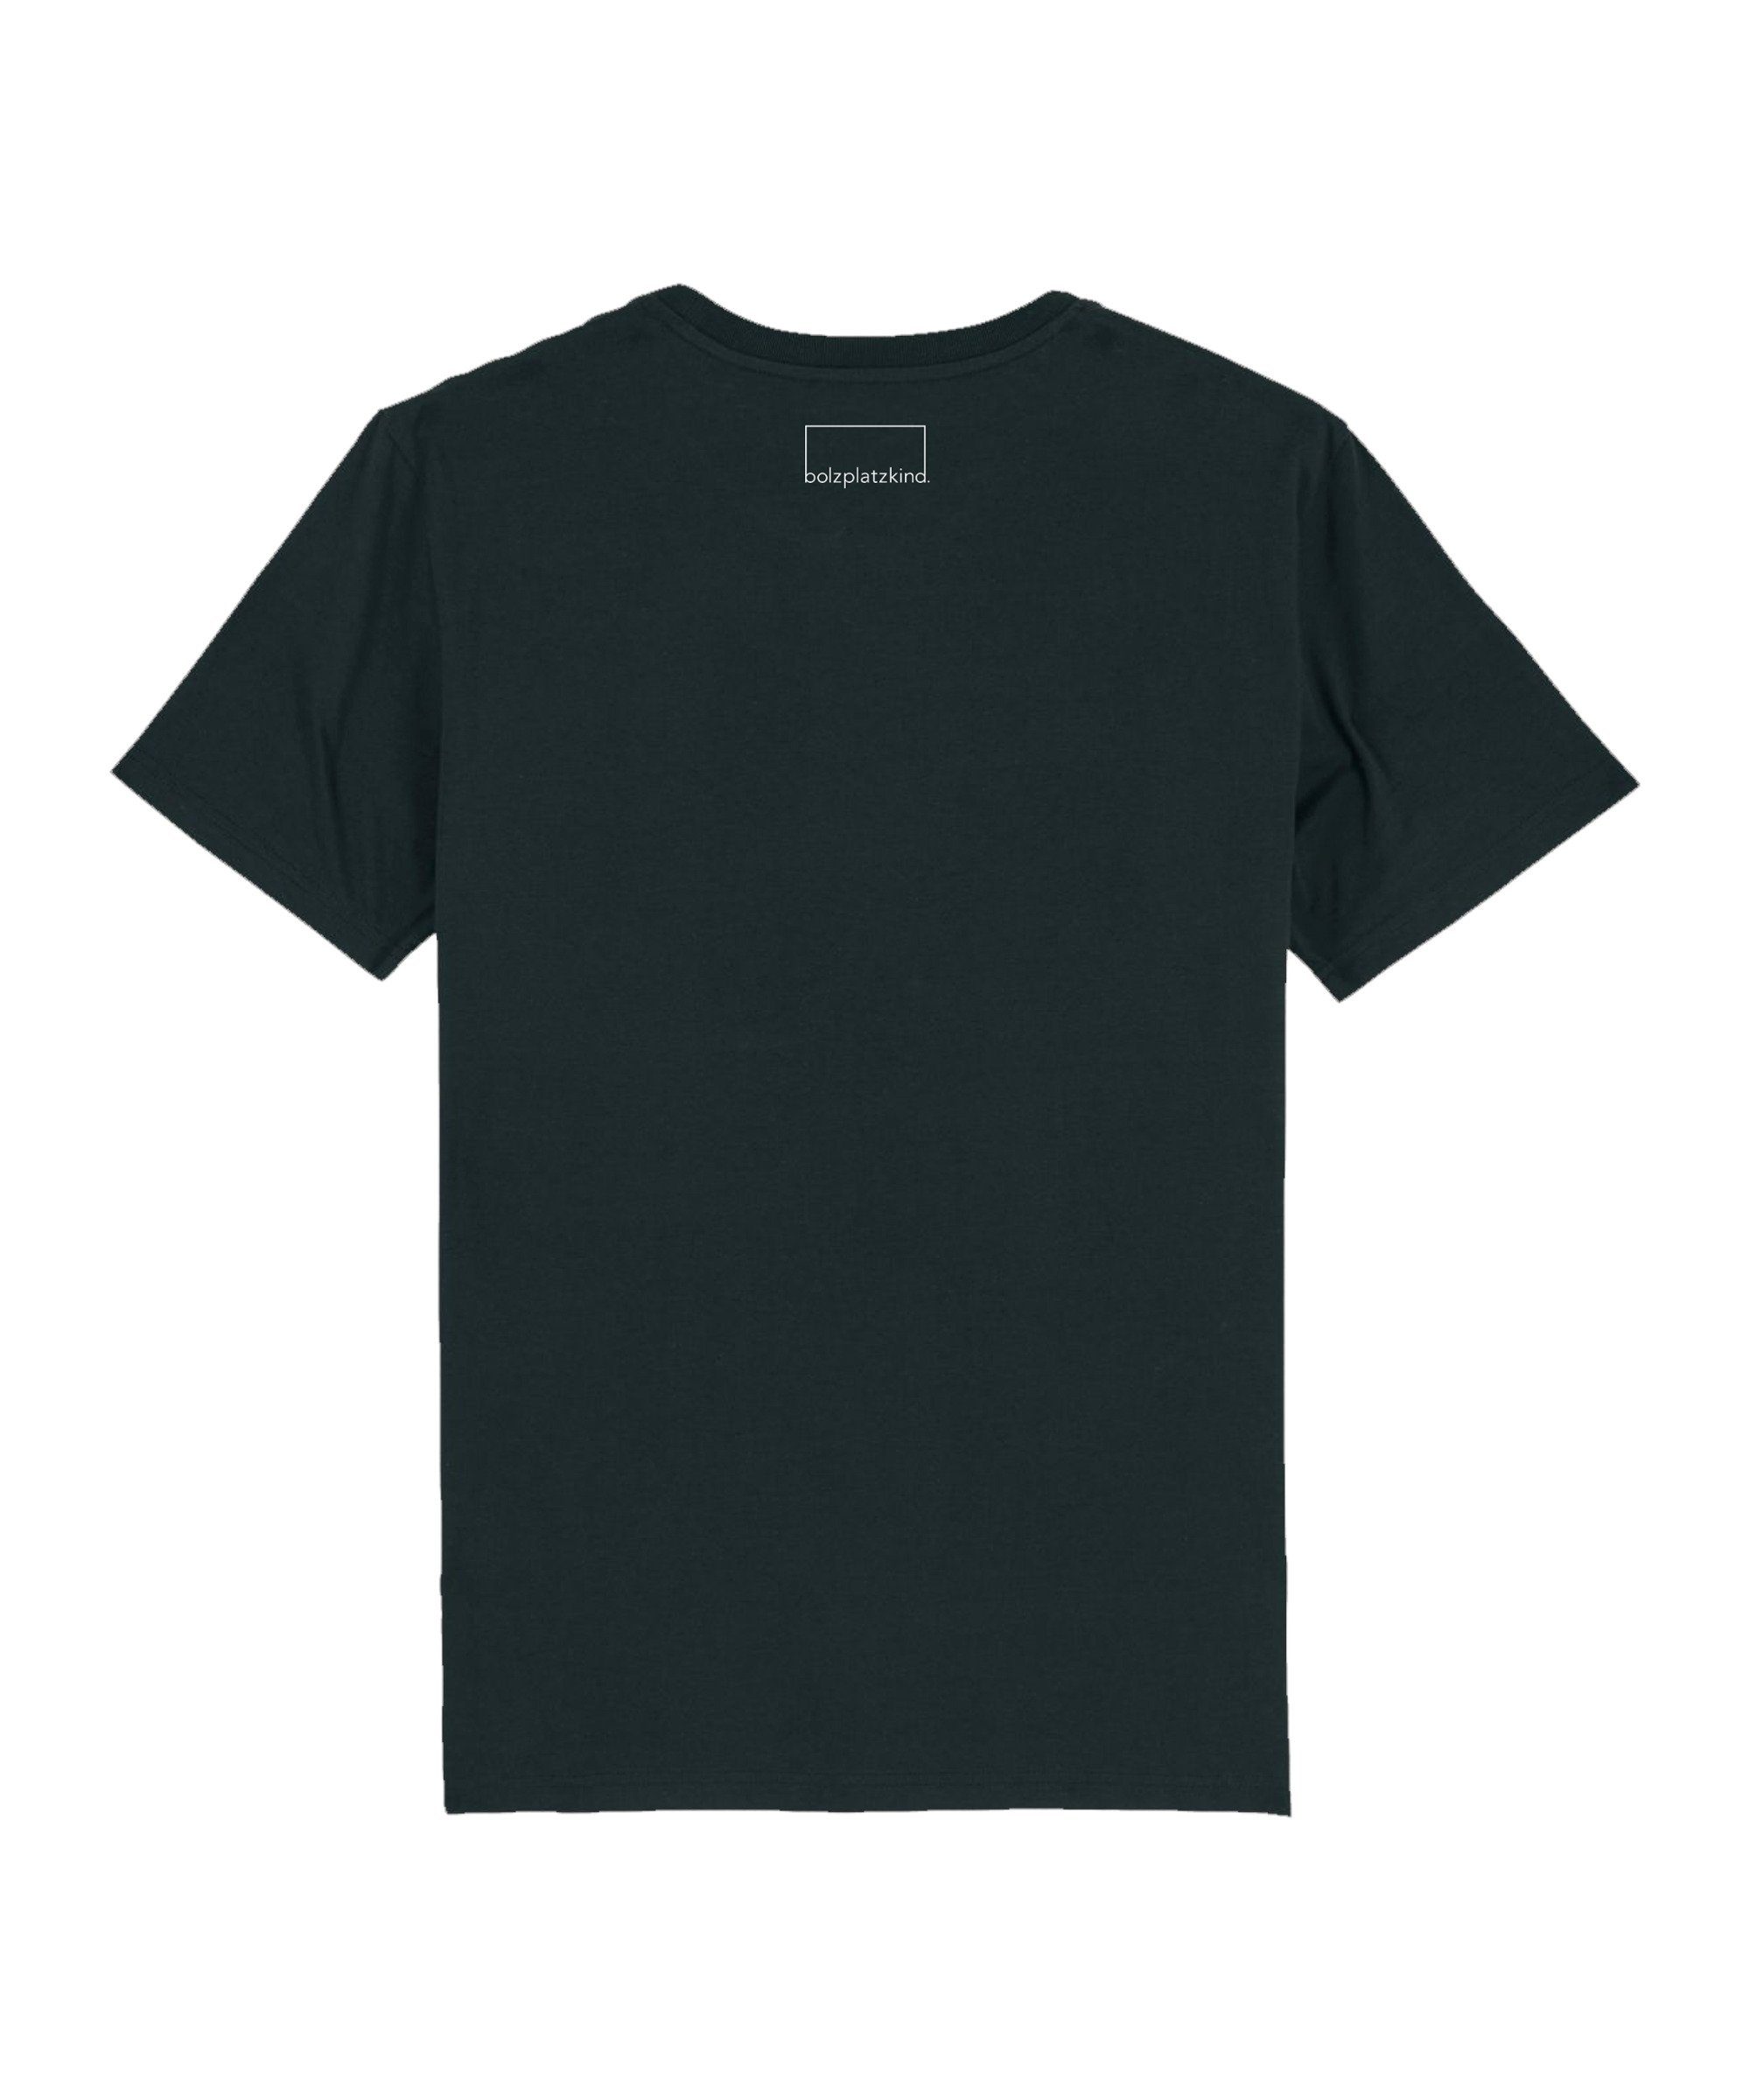 Bolzplatzkind T-Shirt T-Shirt Nachhaltiges schwarz "Karrieremodus" Produkt